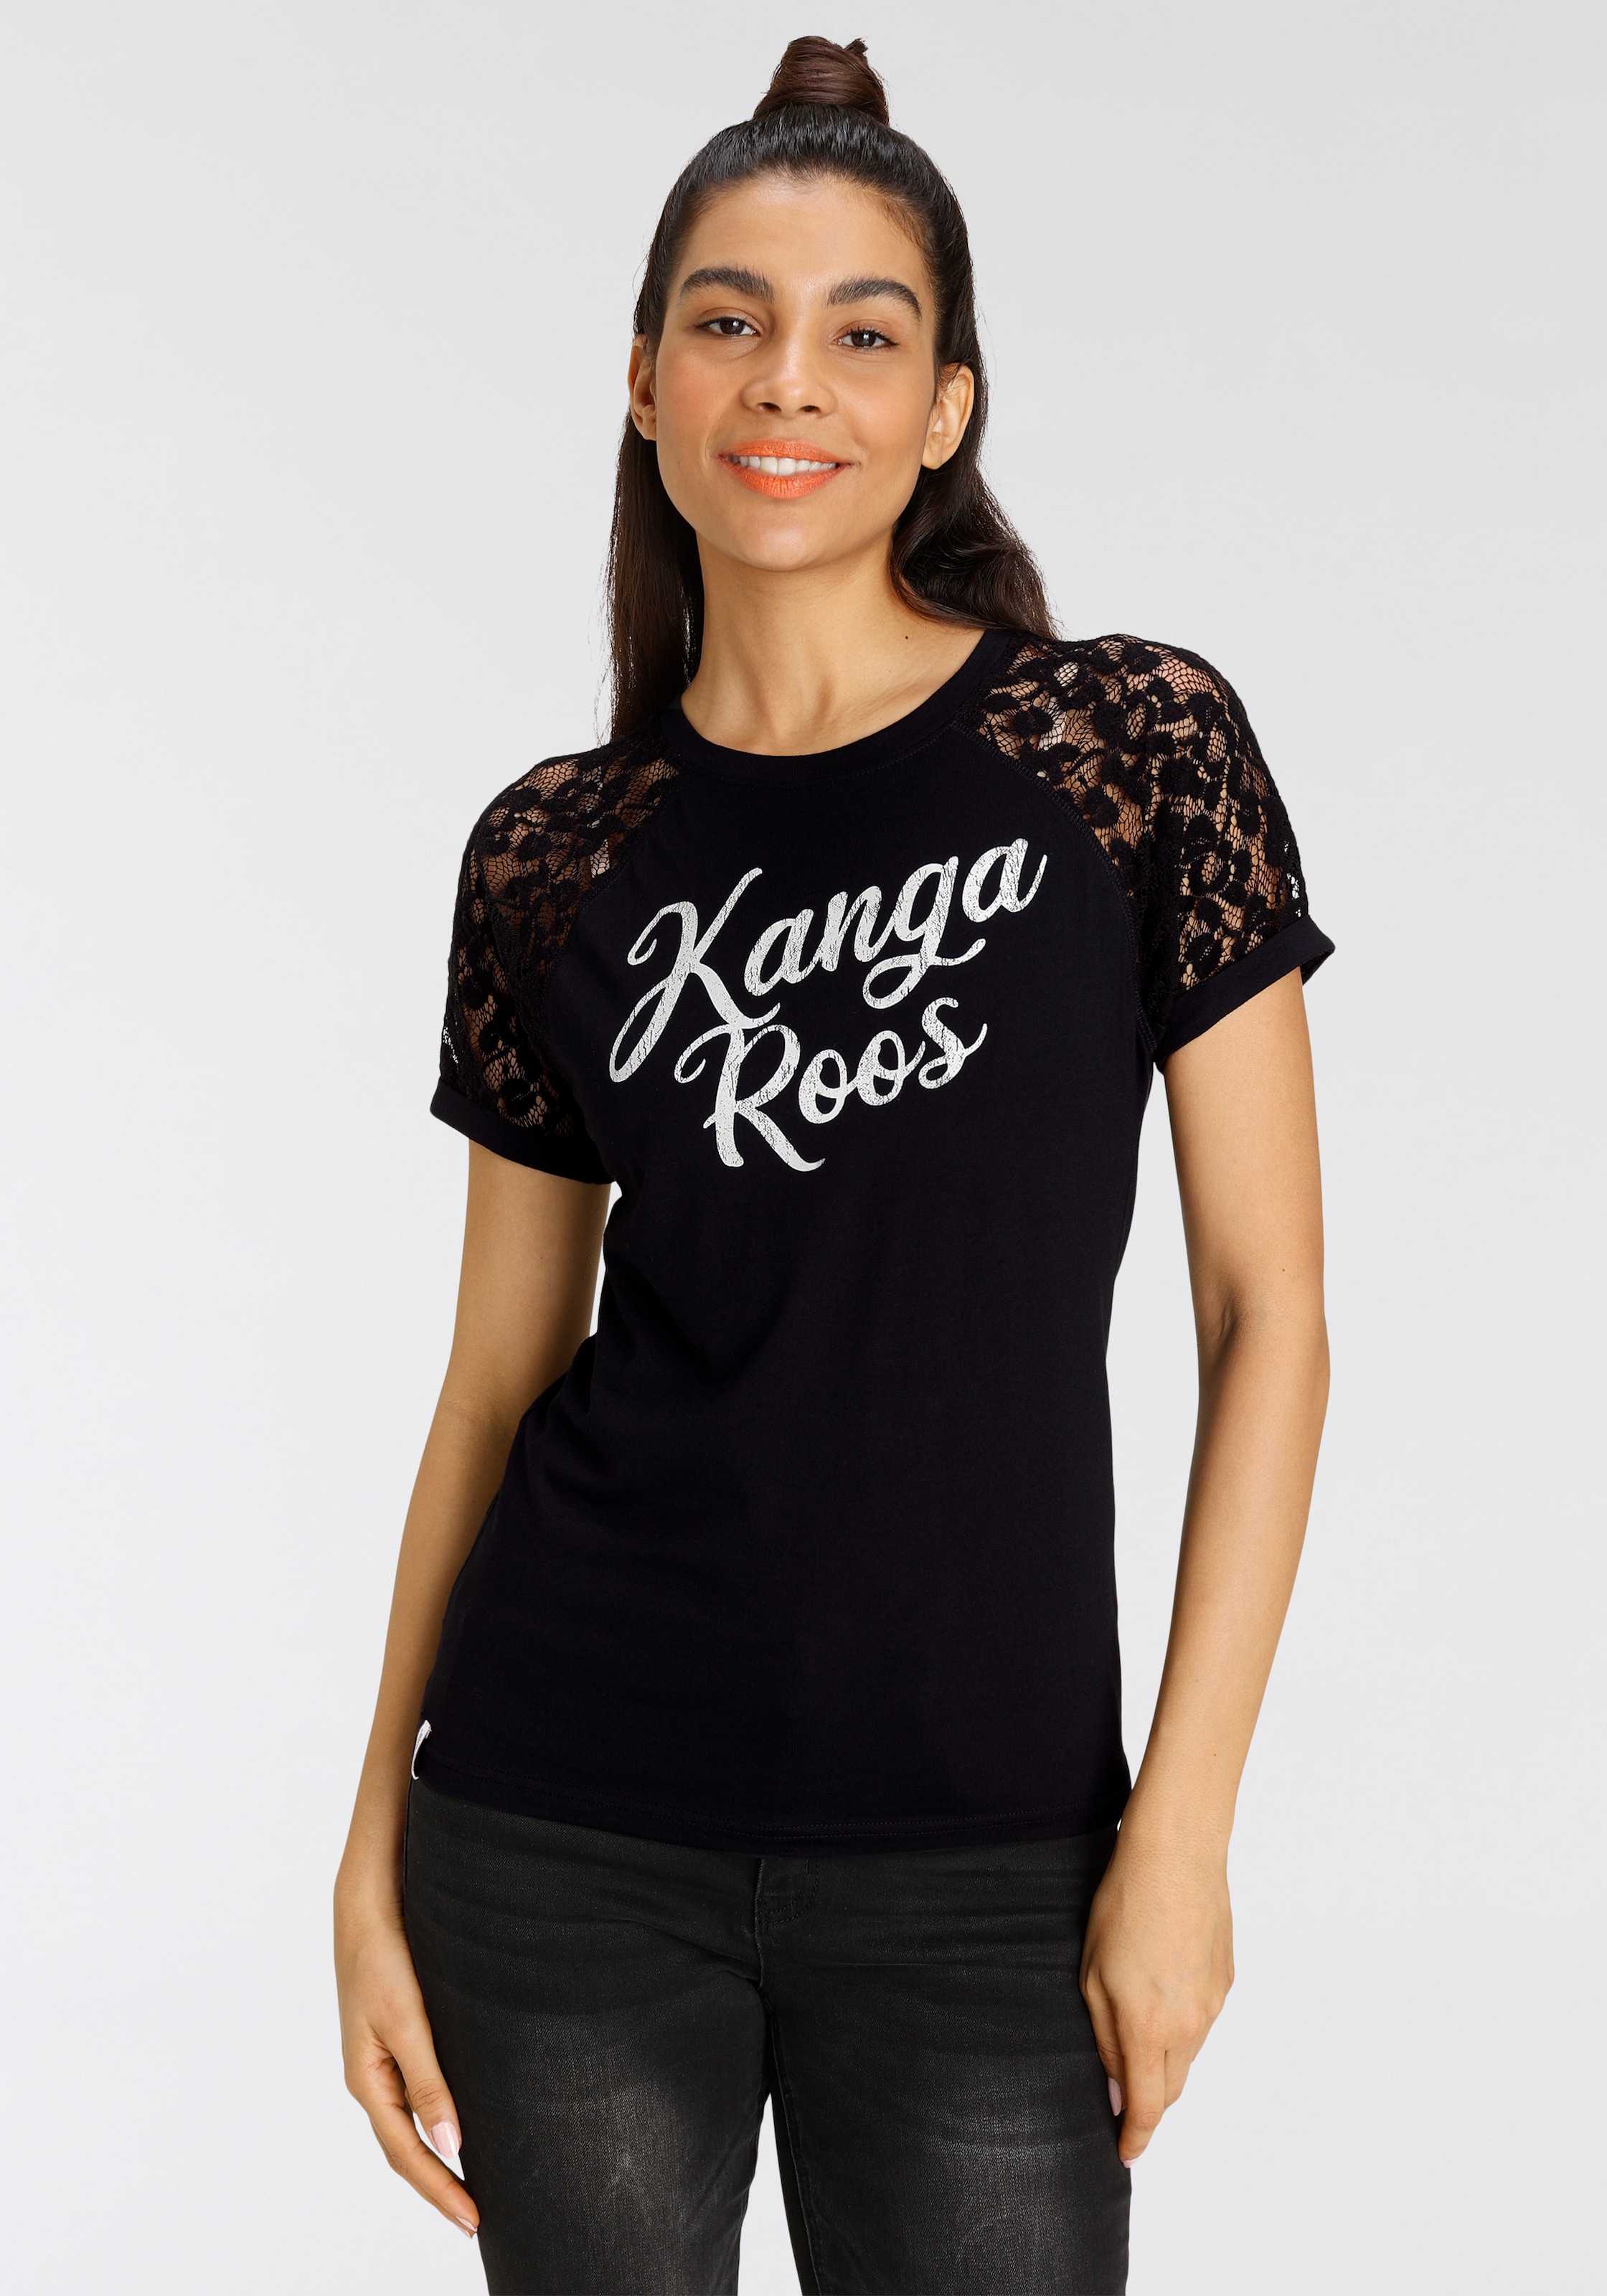 KangaROOS® | KangaROOS® Onlineshop | I'm walking